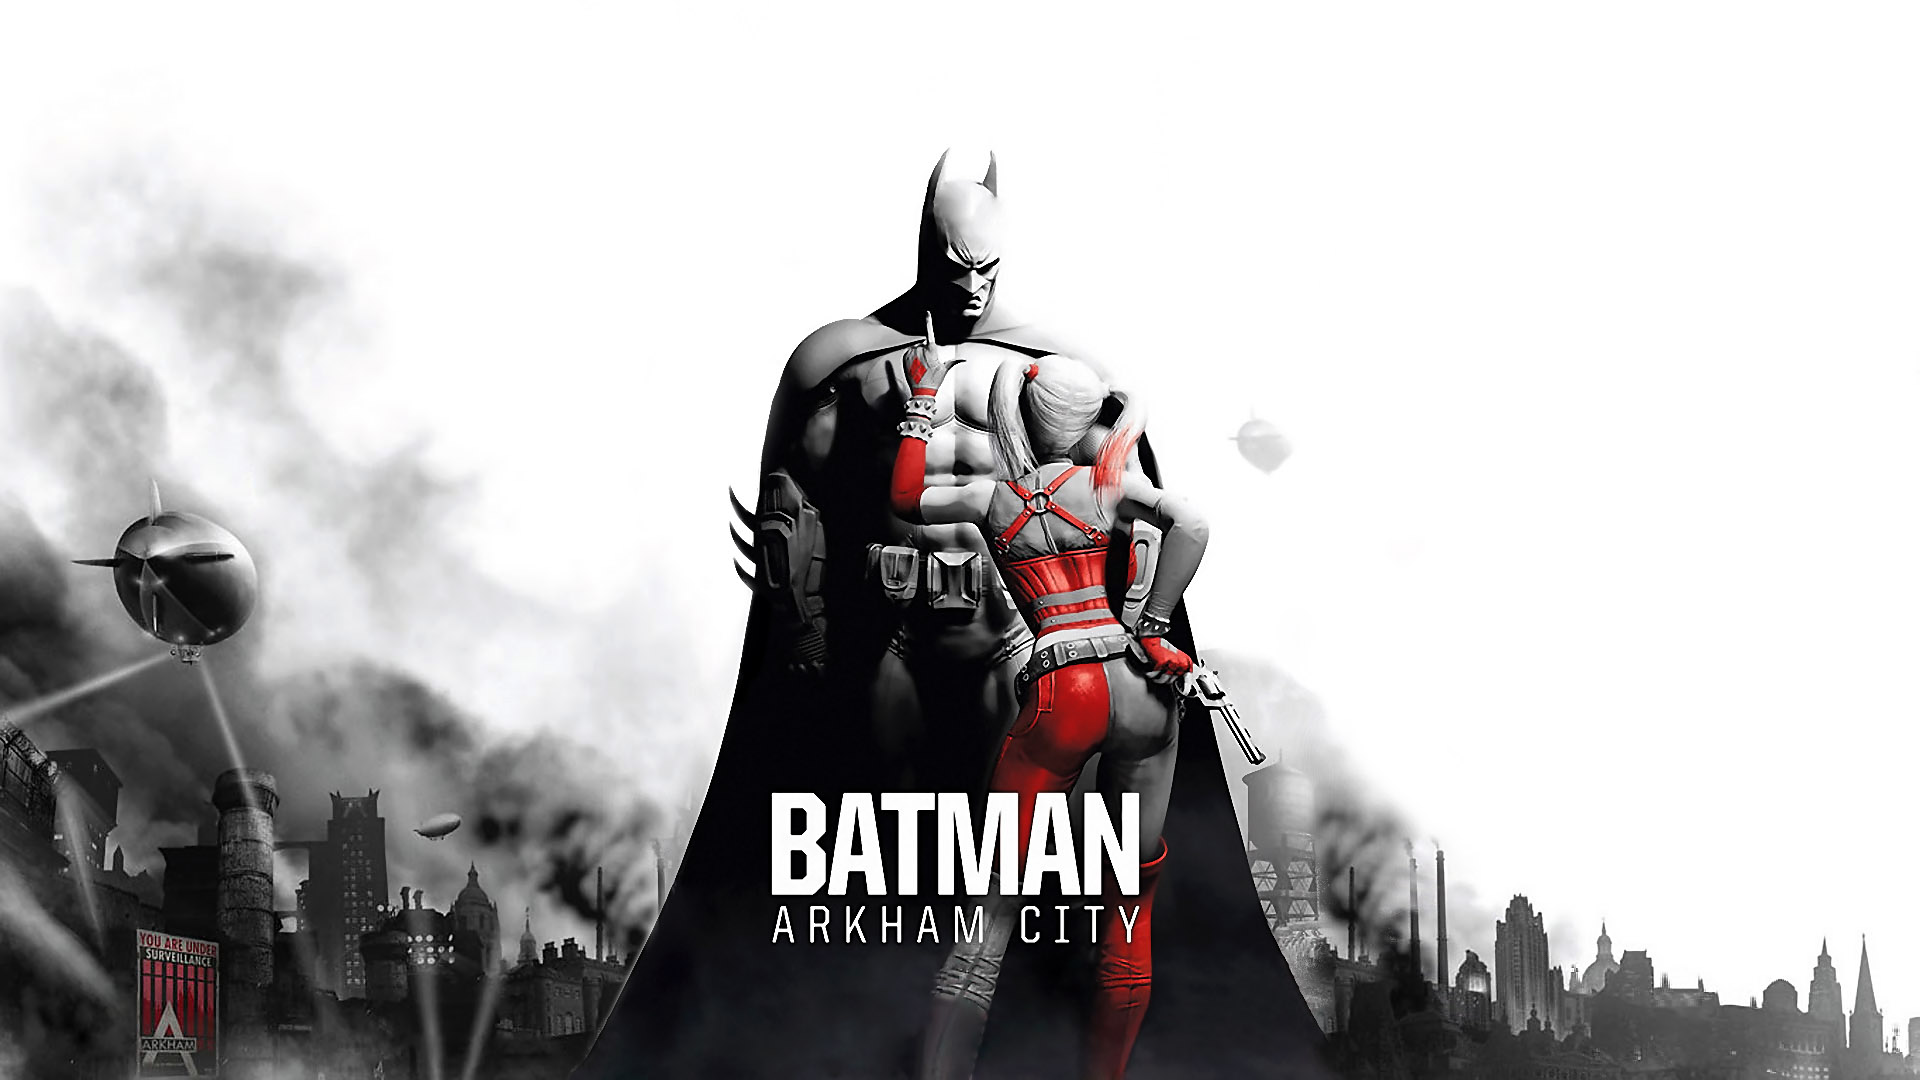 Batman: Arkham City trailer unveils Mr. Freeze